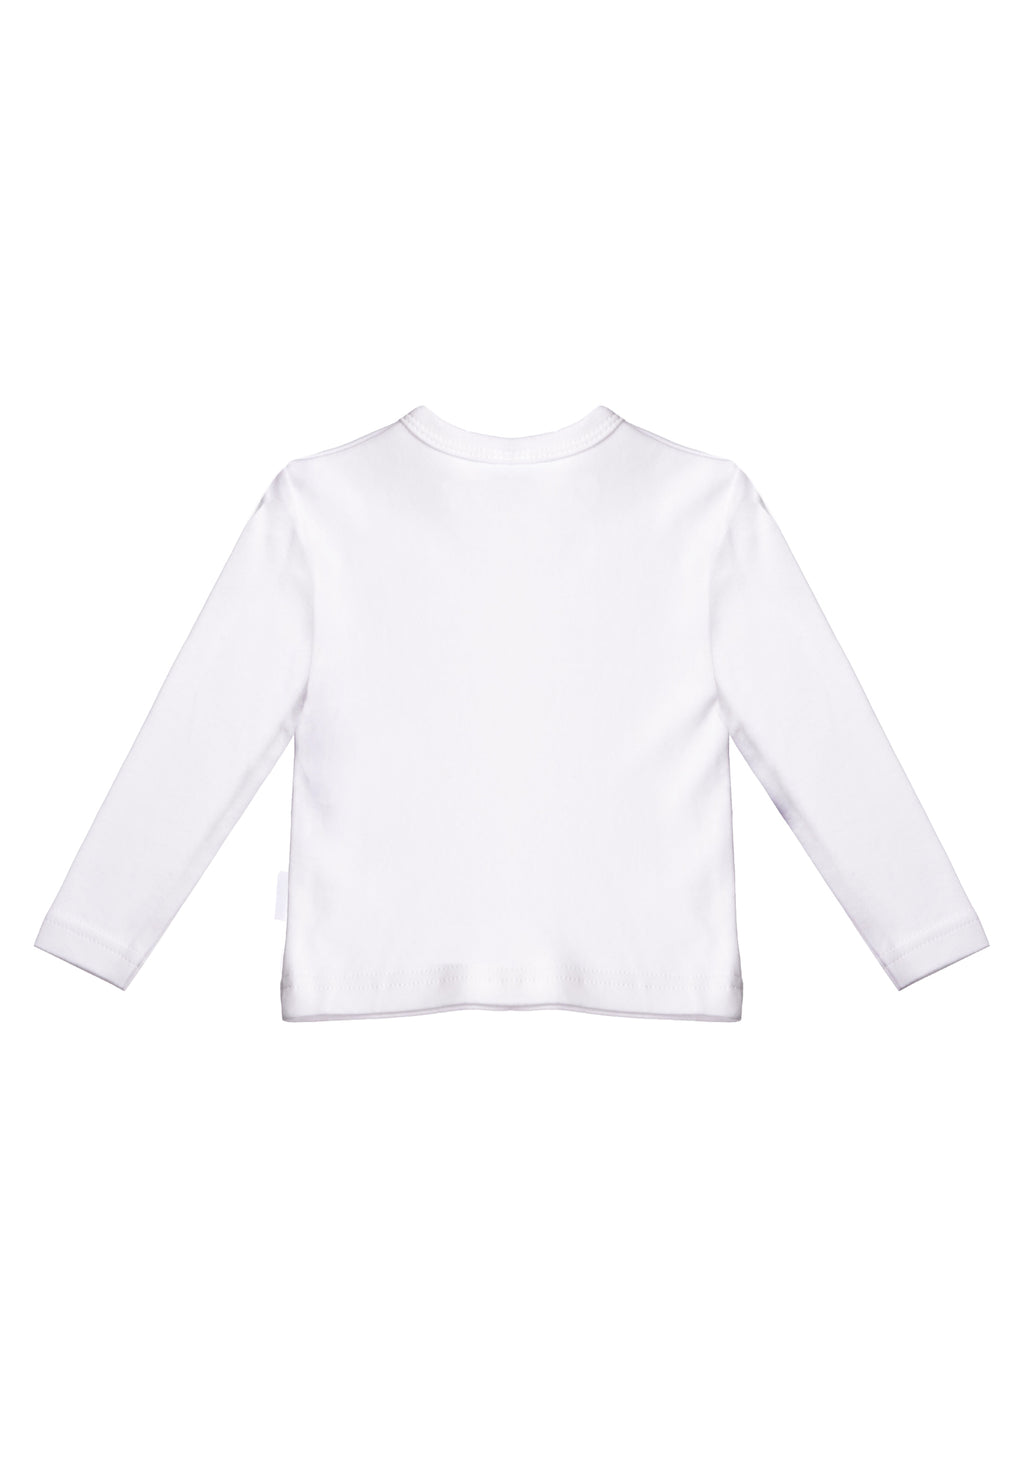 Langarmshirt in weiß mit praktischen Druckknöpfen auf der Schulter, für ein einfaches An,- und Ausziehen. Mit Birnen Print auf der Vorderseite.